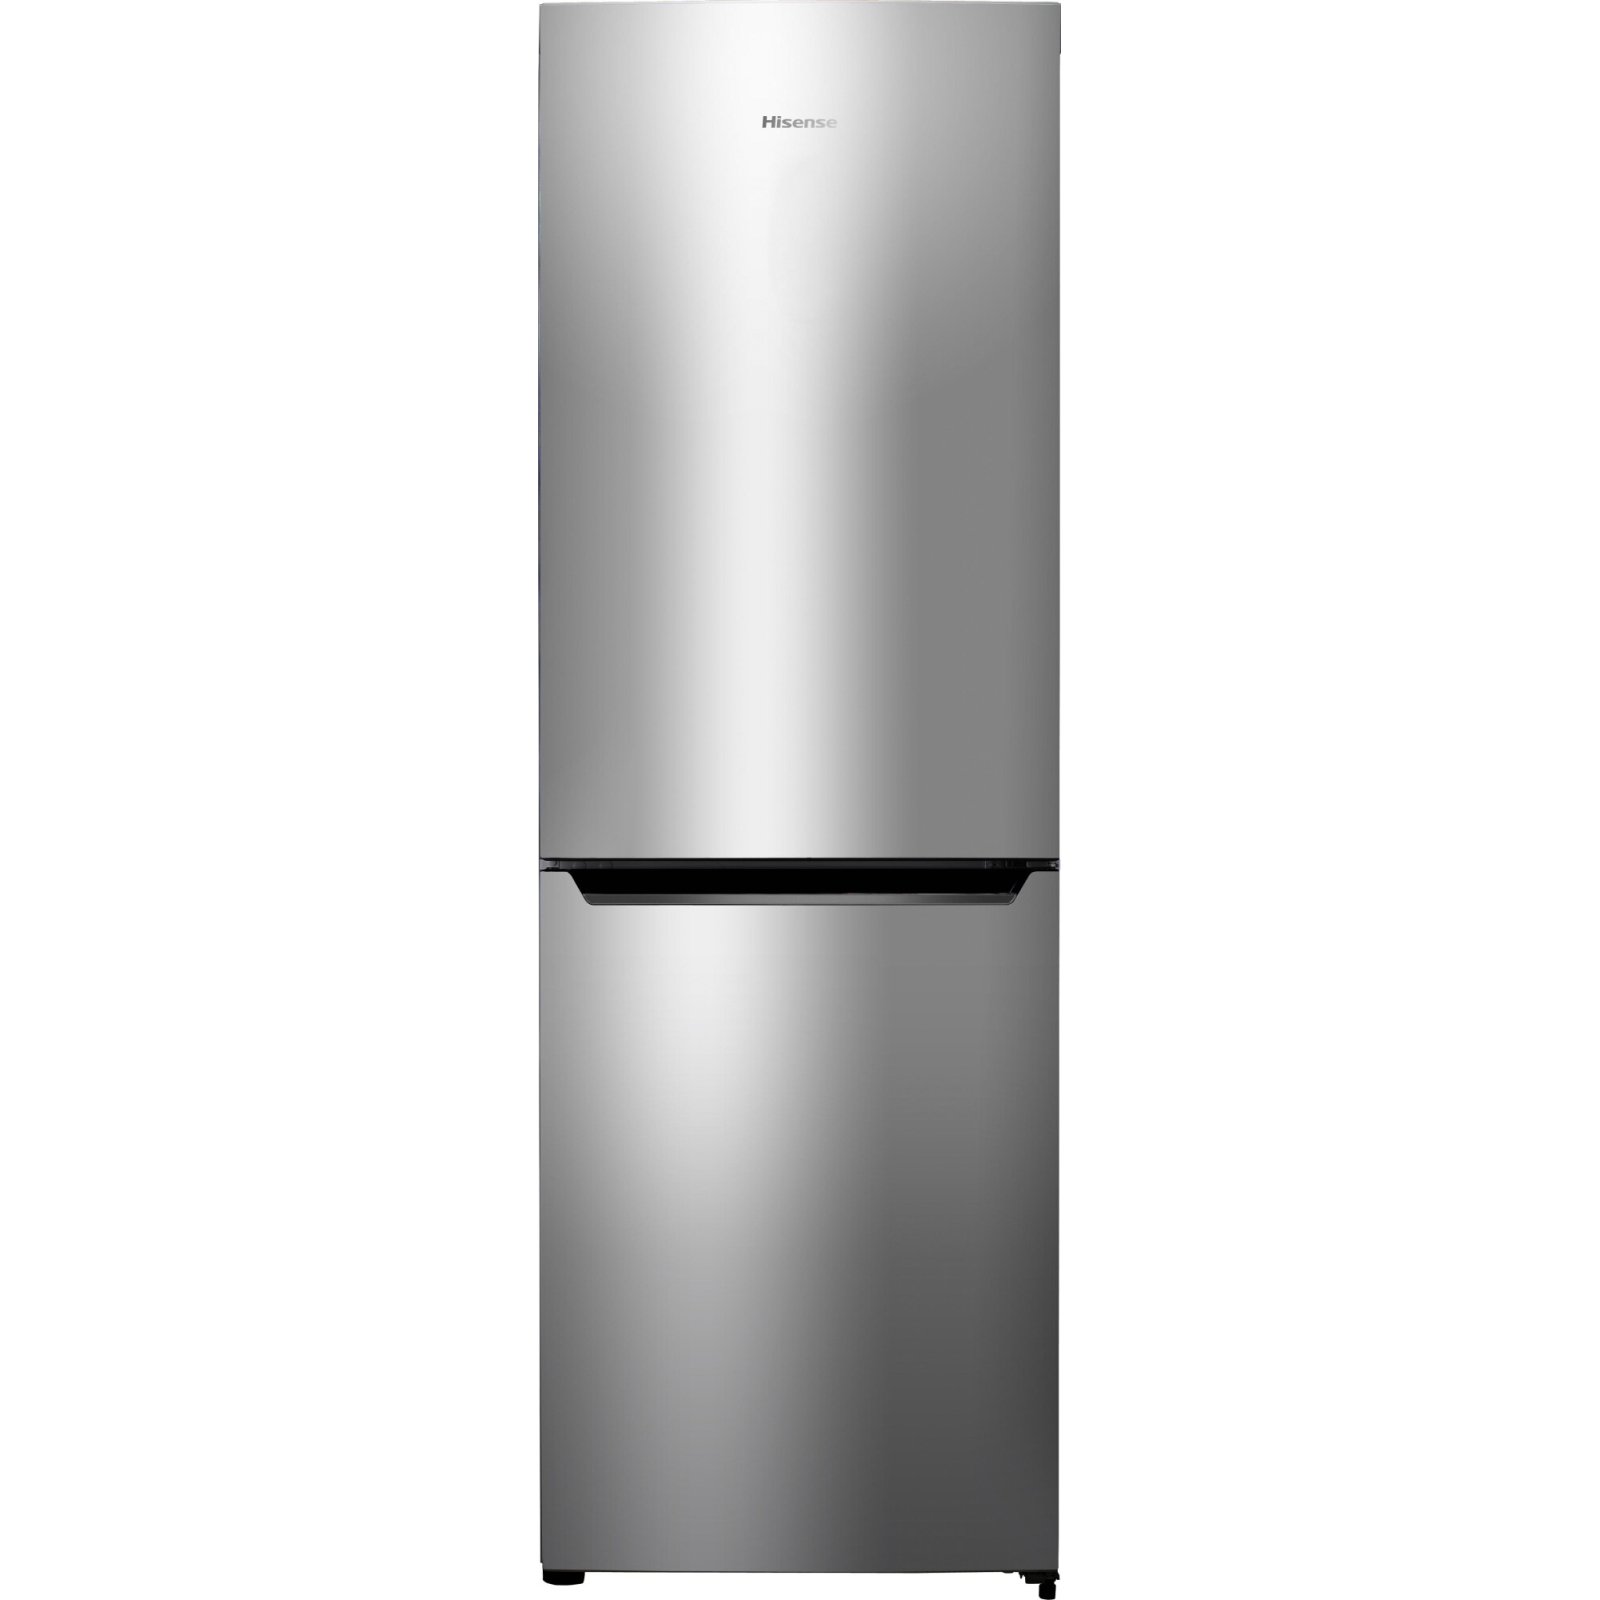 Холодильник Hisense RD-37WC4SHA/CVA1-001